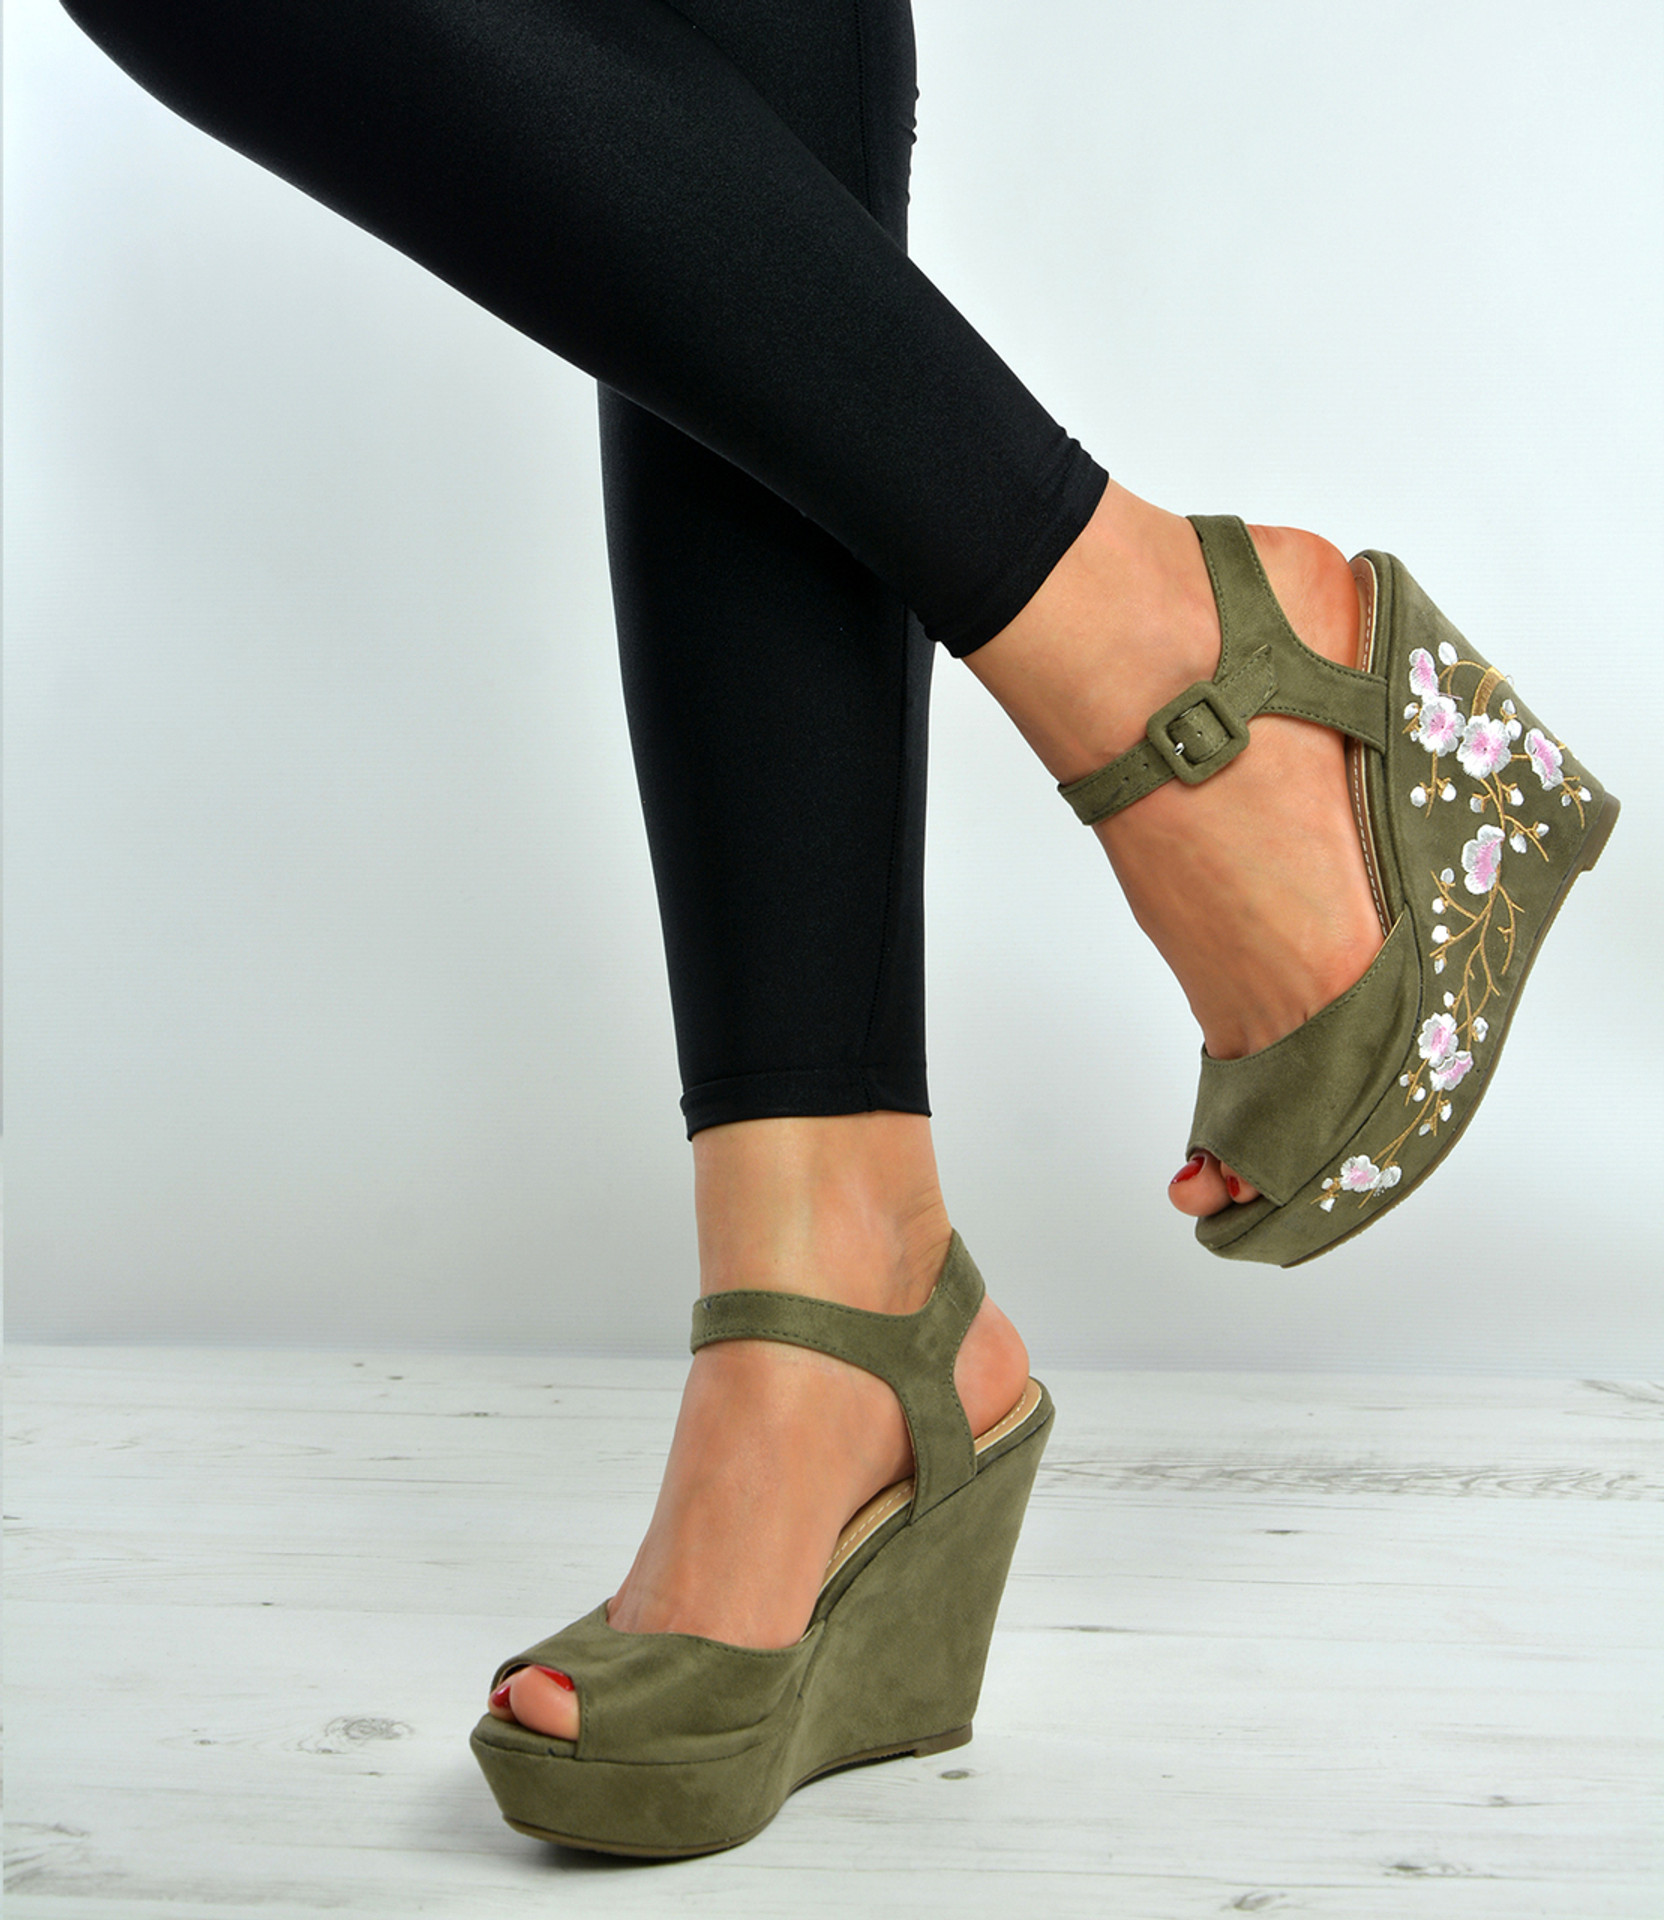 Black Floral Wedge Platforms Ankle Strap Sandals Shoes Size Uk 3-8